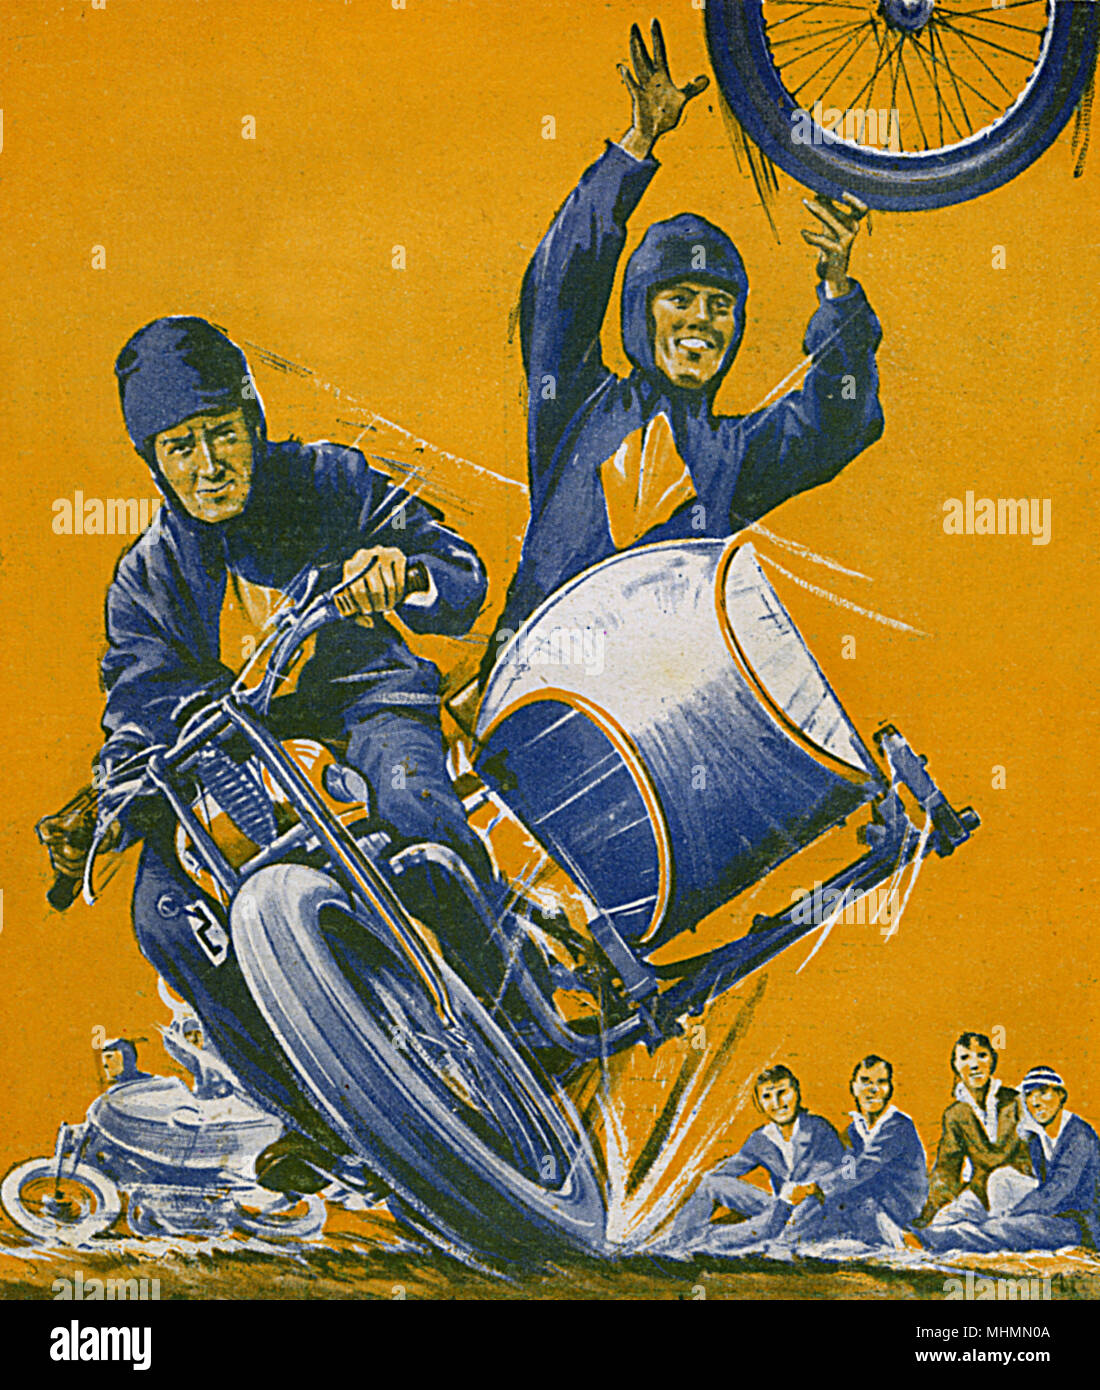 Stunt reitet auf einem Motorrad und Seitenwagen führen Sie ihre Tricks, lösen und werfen den Beiwagen Rad, während er weiterhin an Geschwindigkeit zu fahren. Datum: 1932 Stockfoto